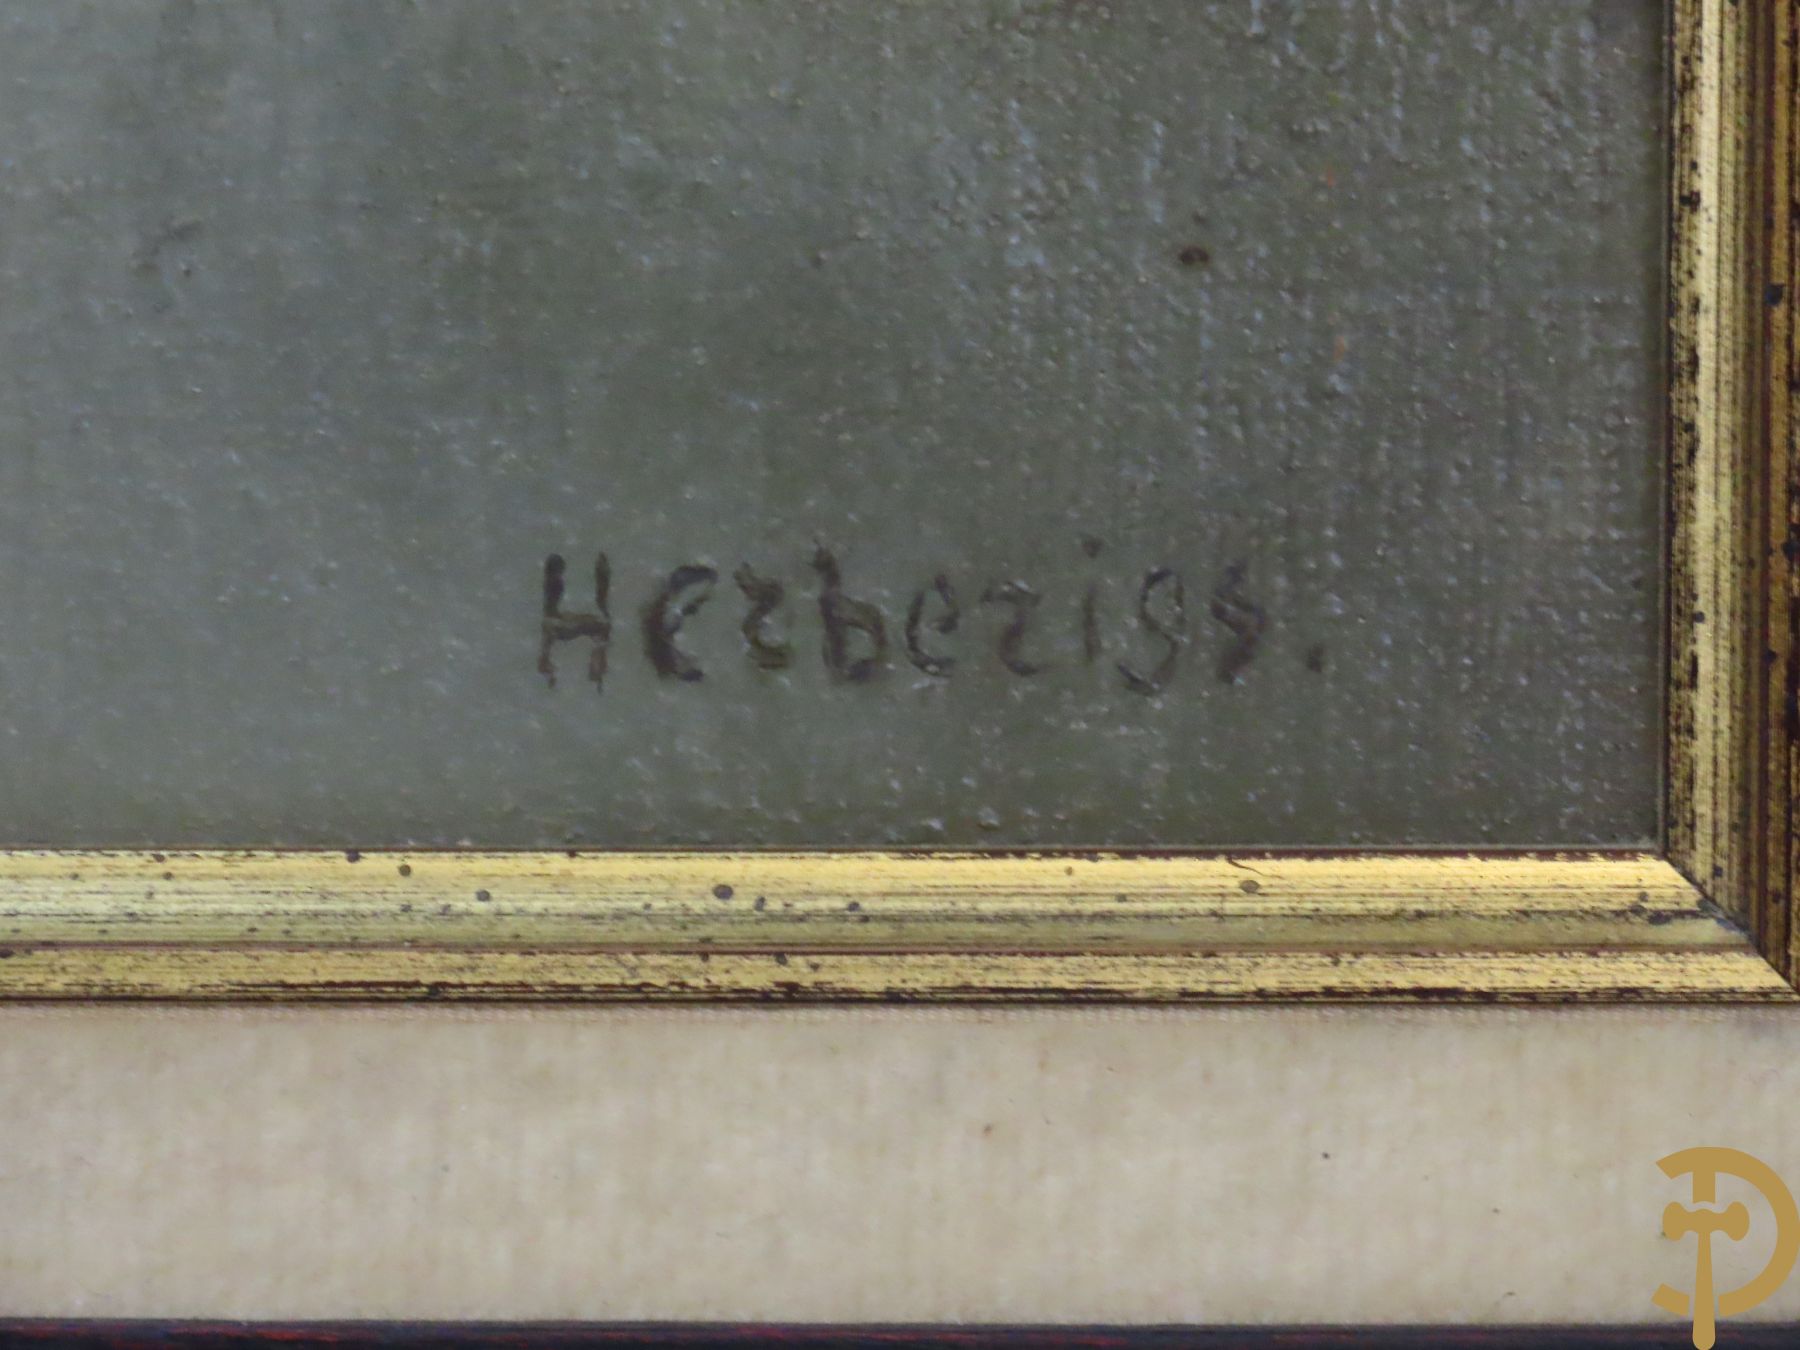 HERTOGS H. get. (verso Pastorale 1978) 